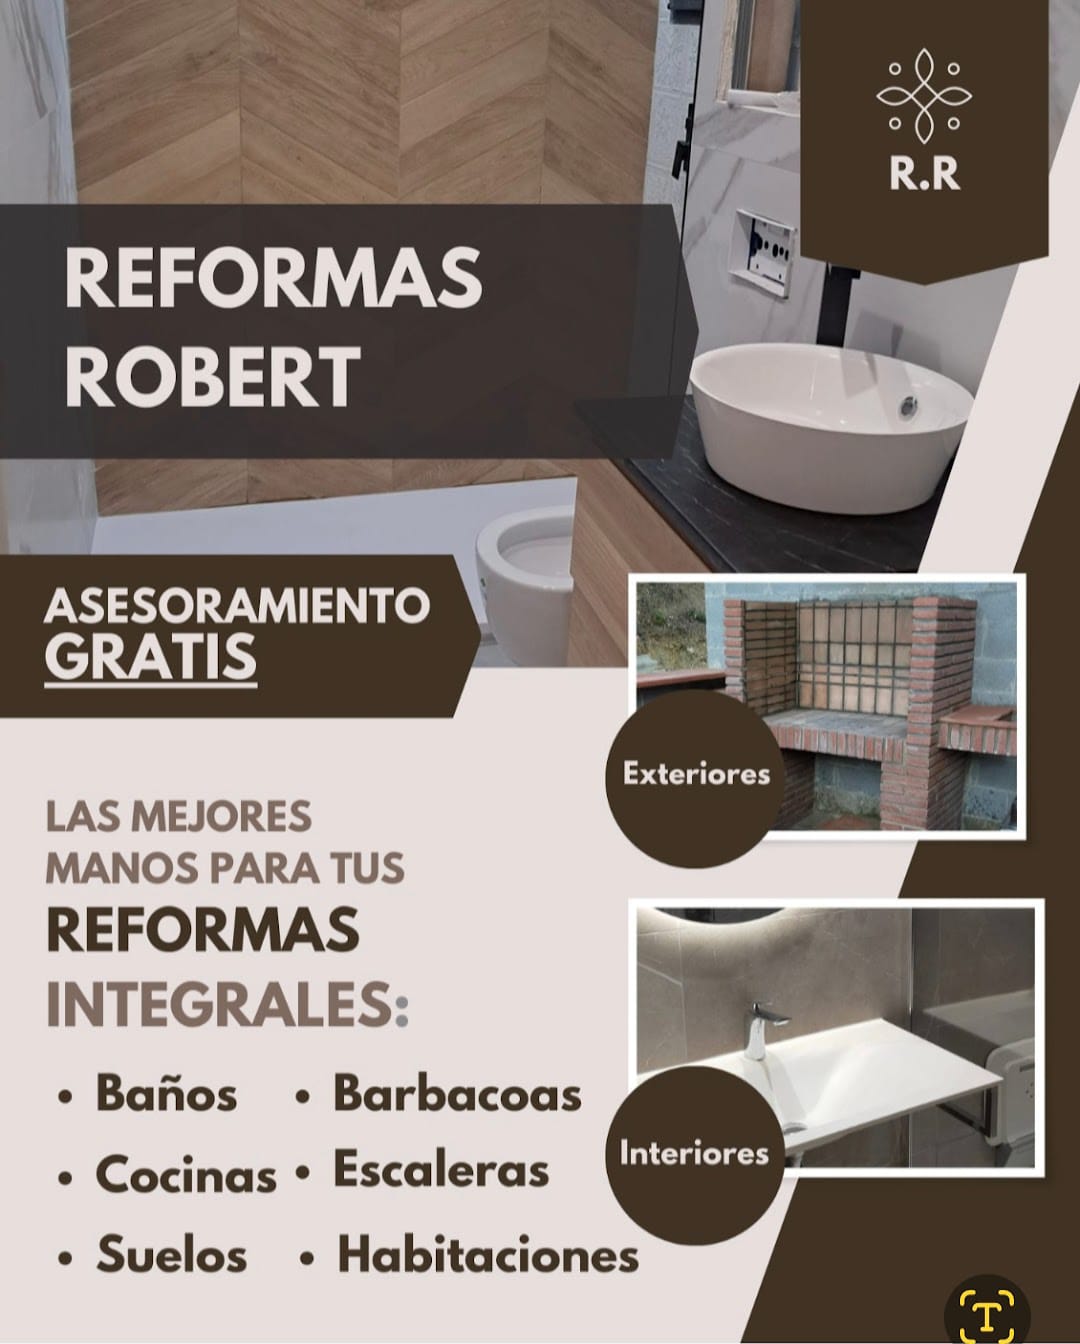 Images Reformas Robert